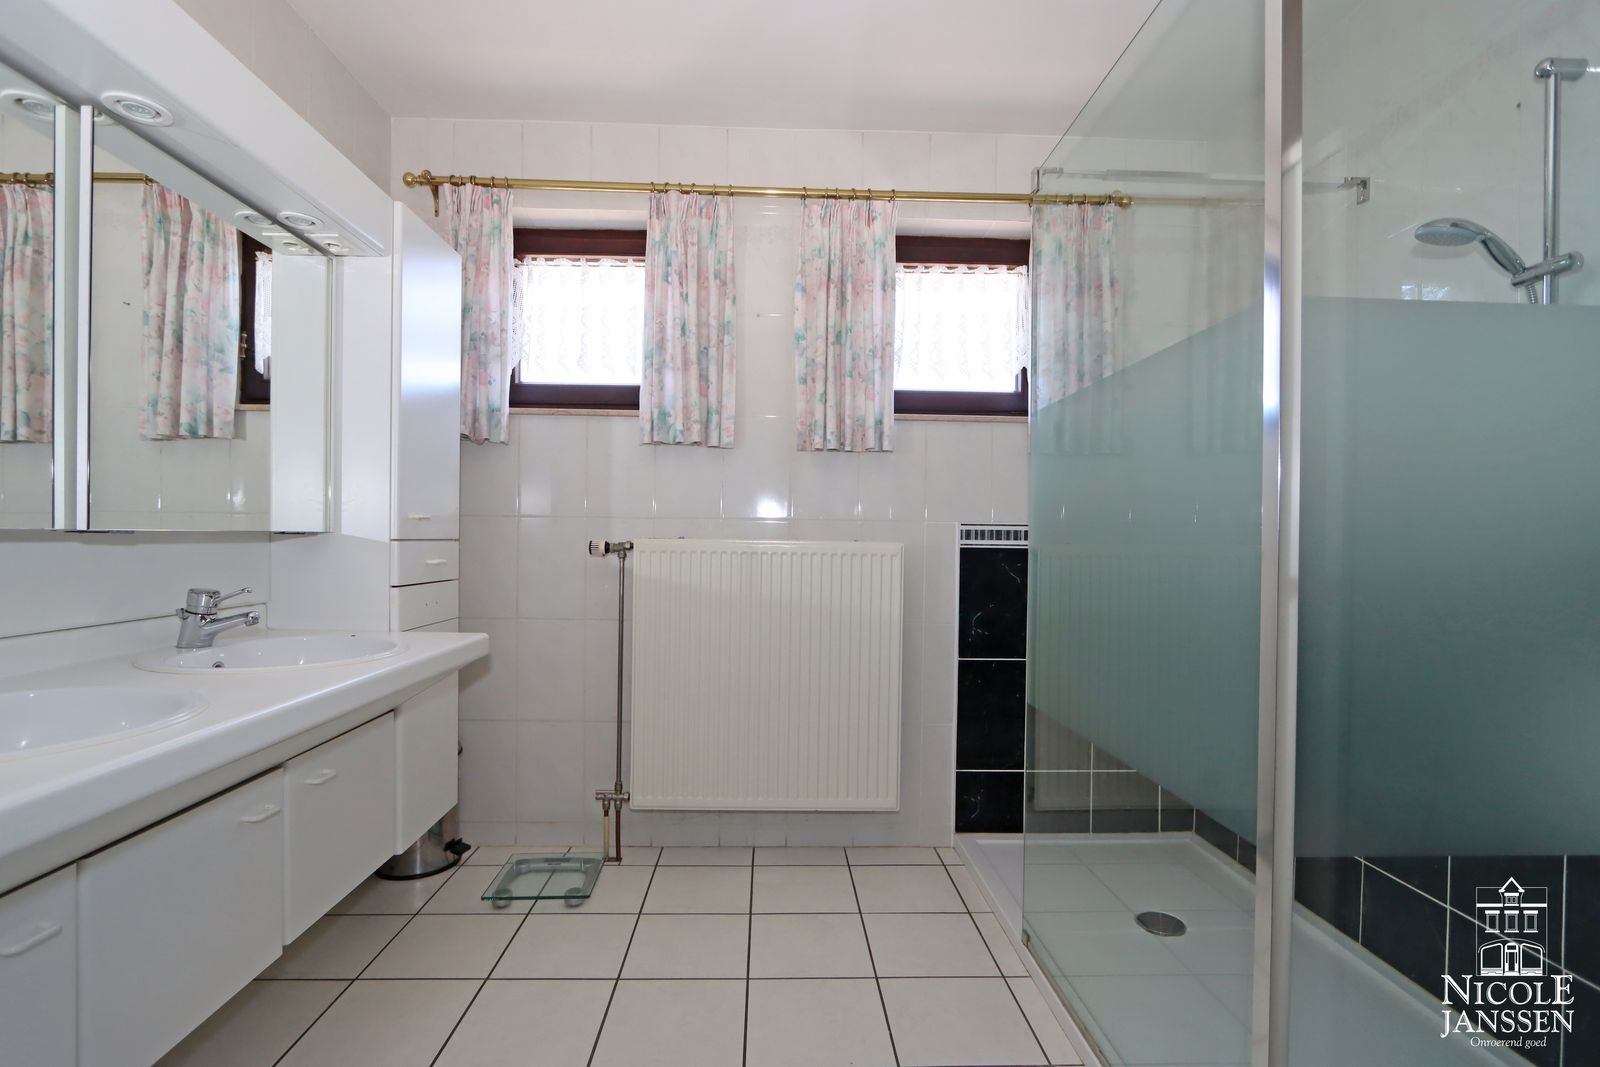 15 Nicole Janssen huis te koop Dijkweg 1D Dilsen (badkamer woning foto 2)_bewerkt-1.jpg